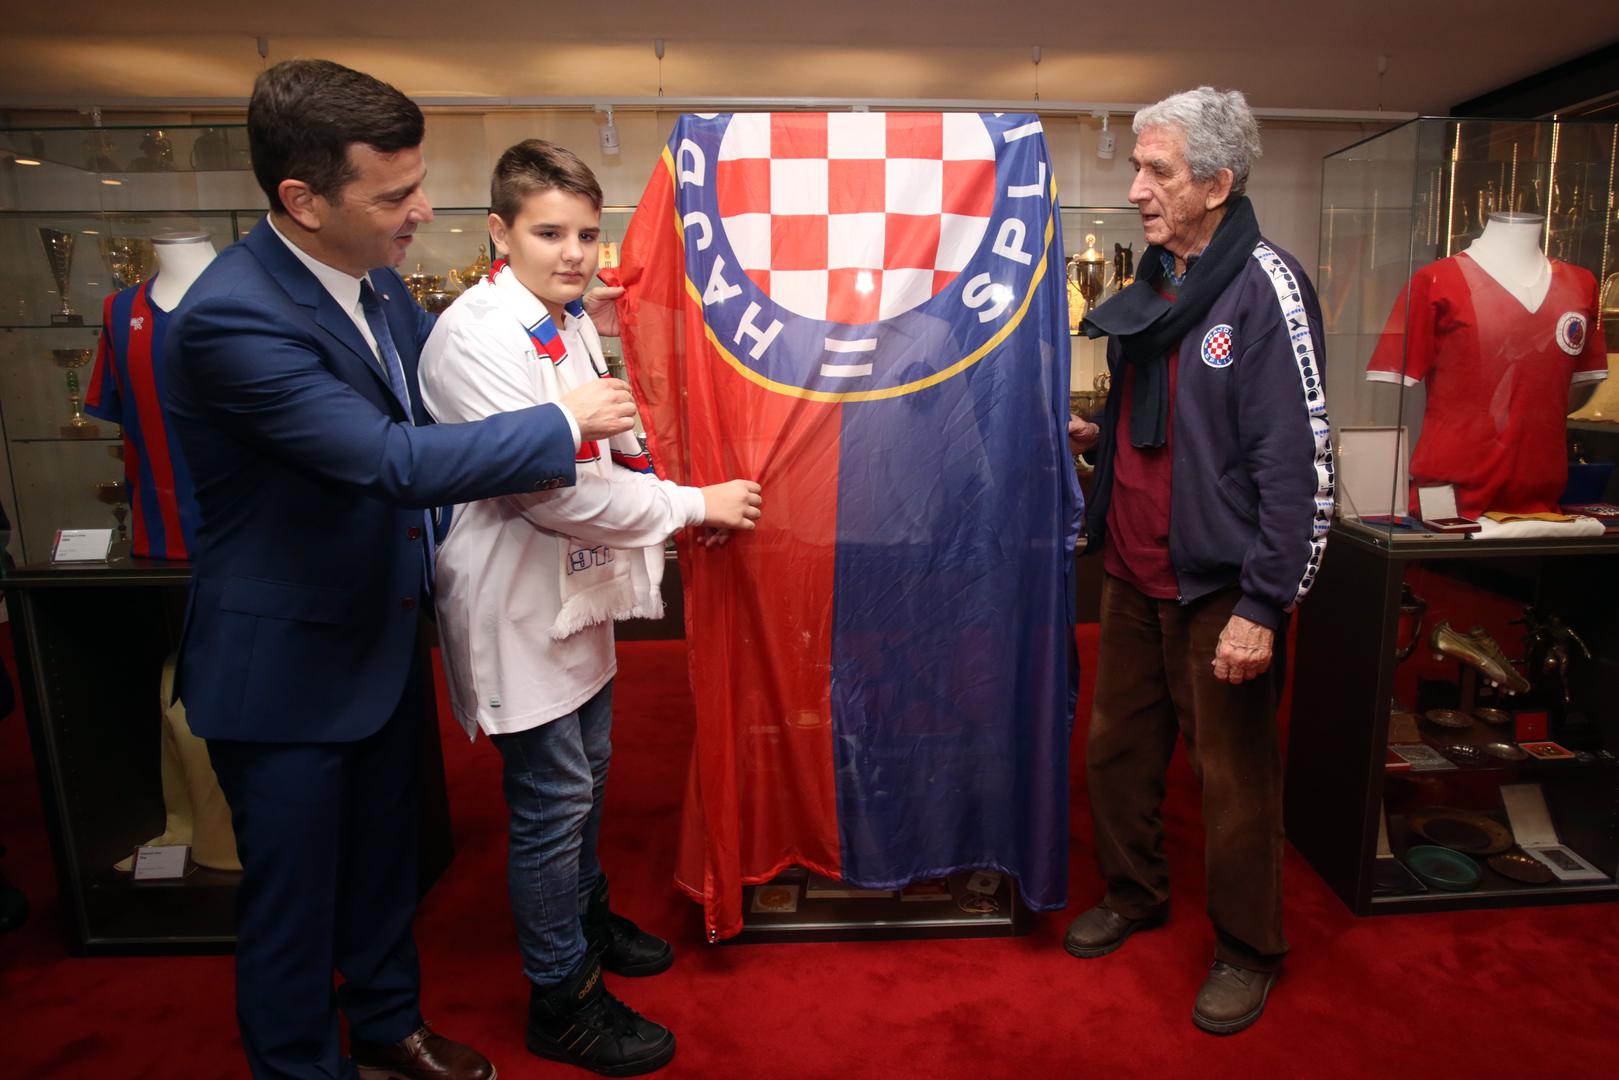 U ime Hajduka vijenac je položio predsjednik Uprave Jasmin Huljaj, i Bogdan Kragić, Franin suigrač i jedini živi nogometaša iz šampionske generacije 1955. godine, dok je vijenac Torcide položio tajnik Toni Madunić. 

